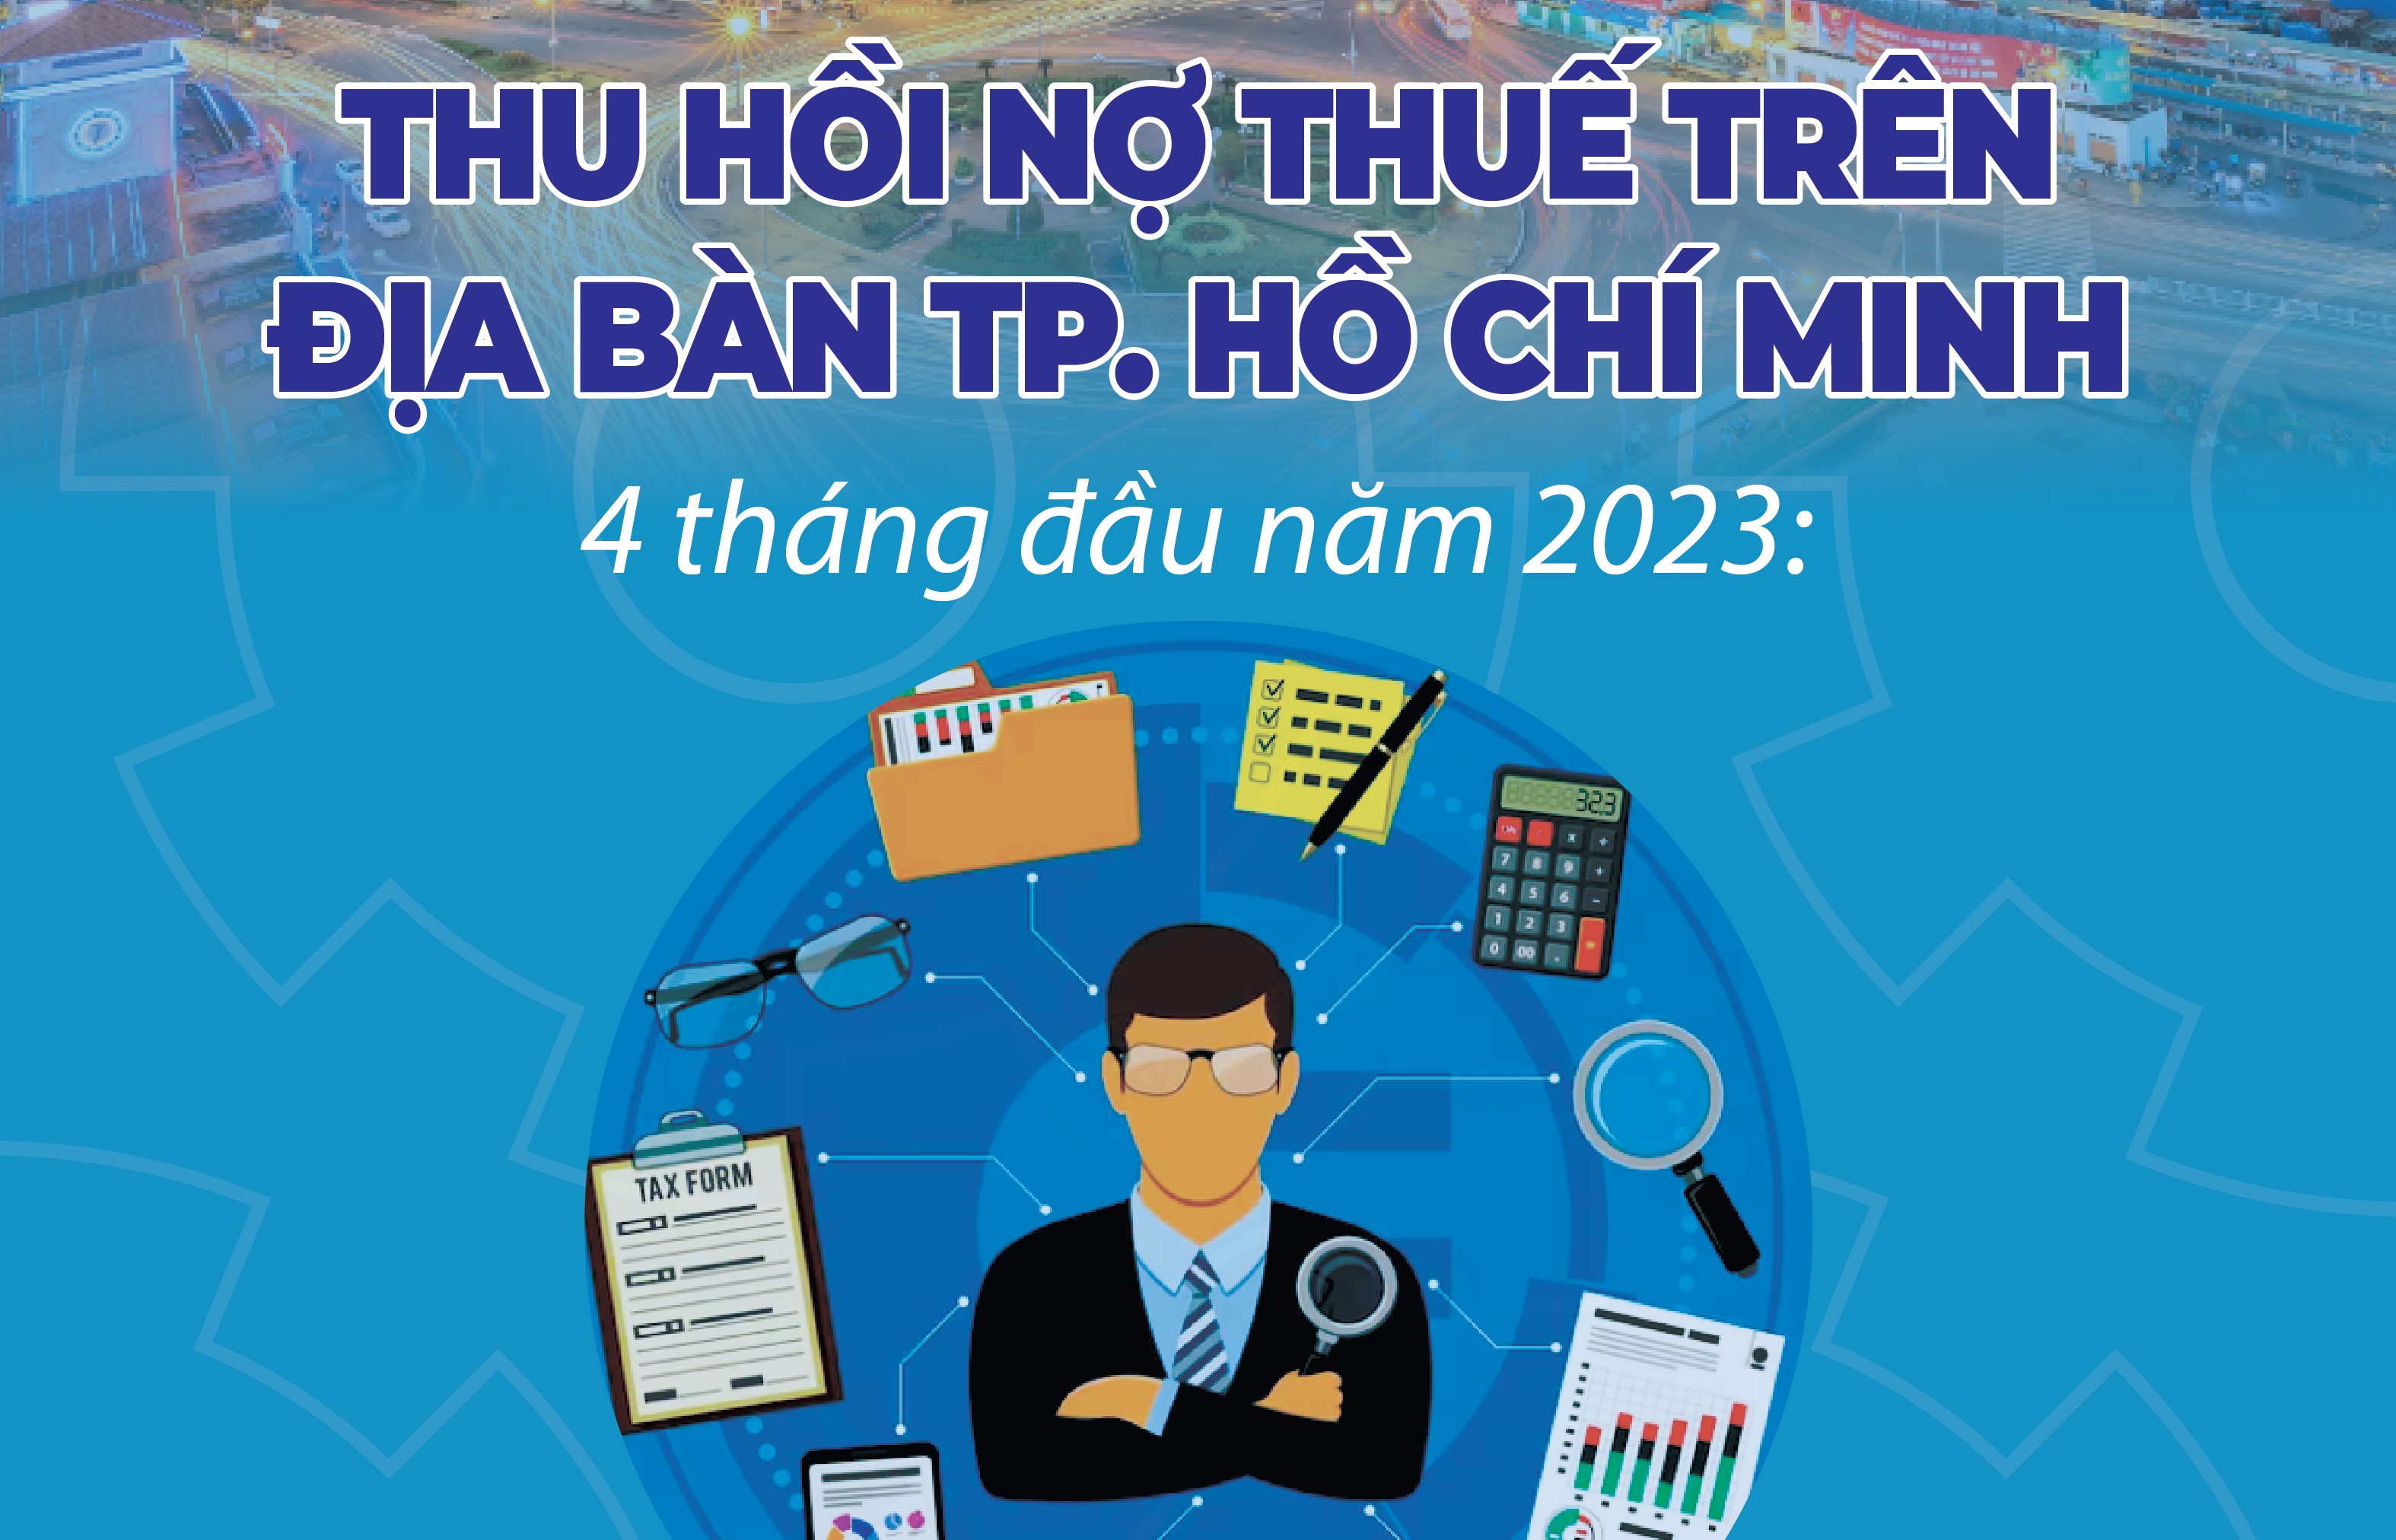 Infographics: Cục Thuế TP. Hồ Chí Minh thu hồi 7.532 tỷ đồng nợ thuế